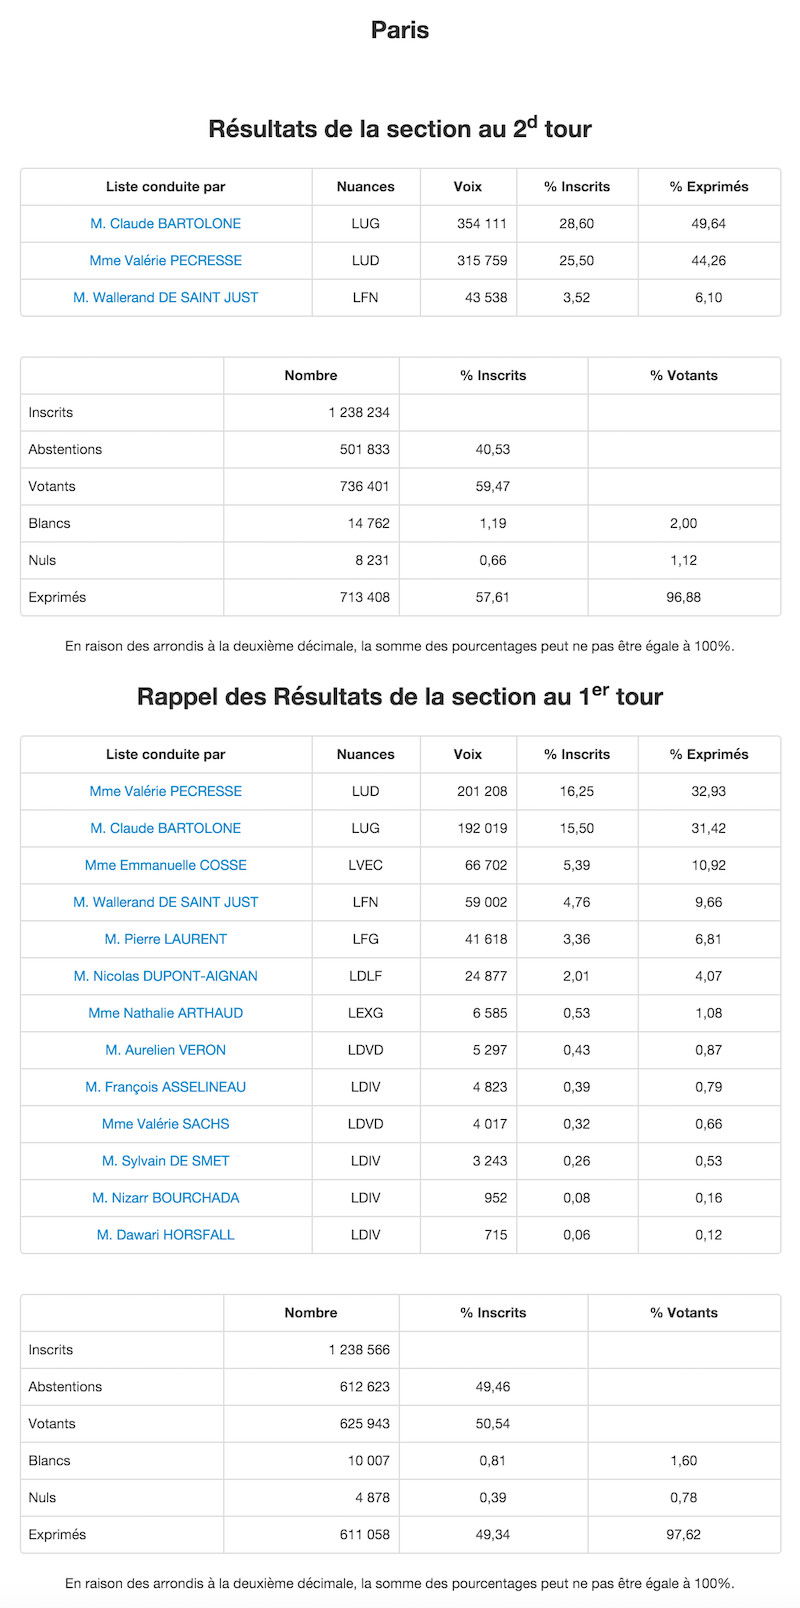 Régionales 2015 et 2010 dans le 8e arrondissement de Paris